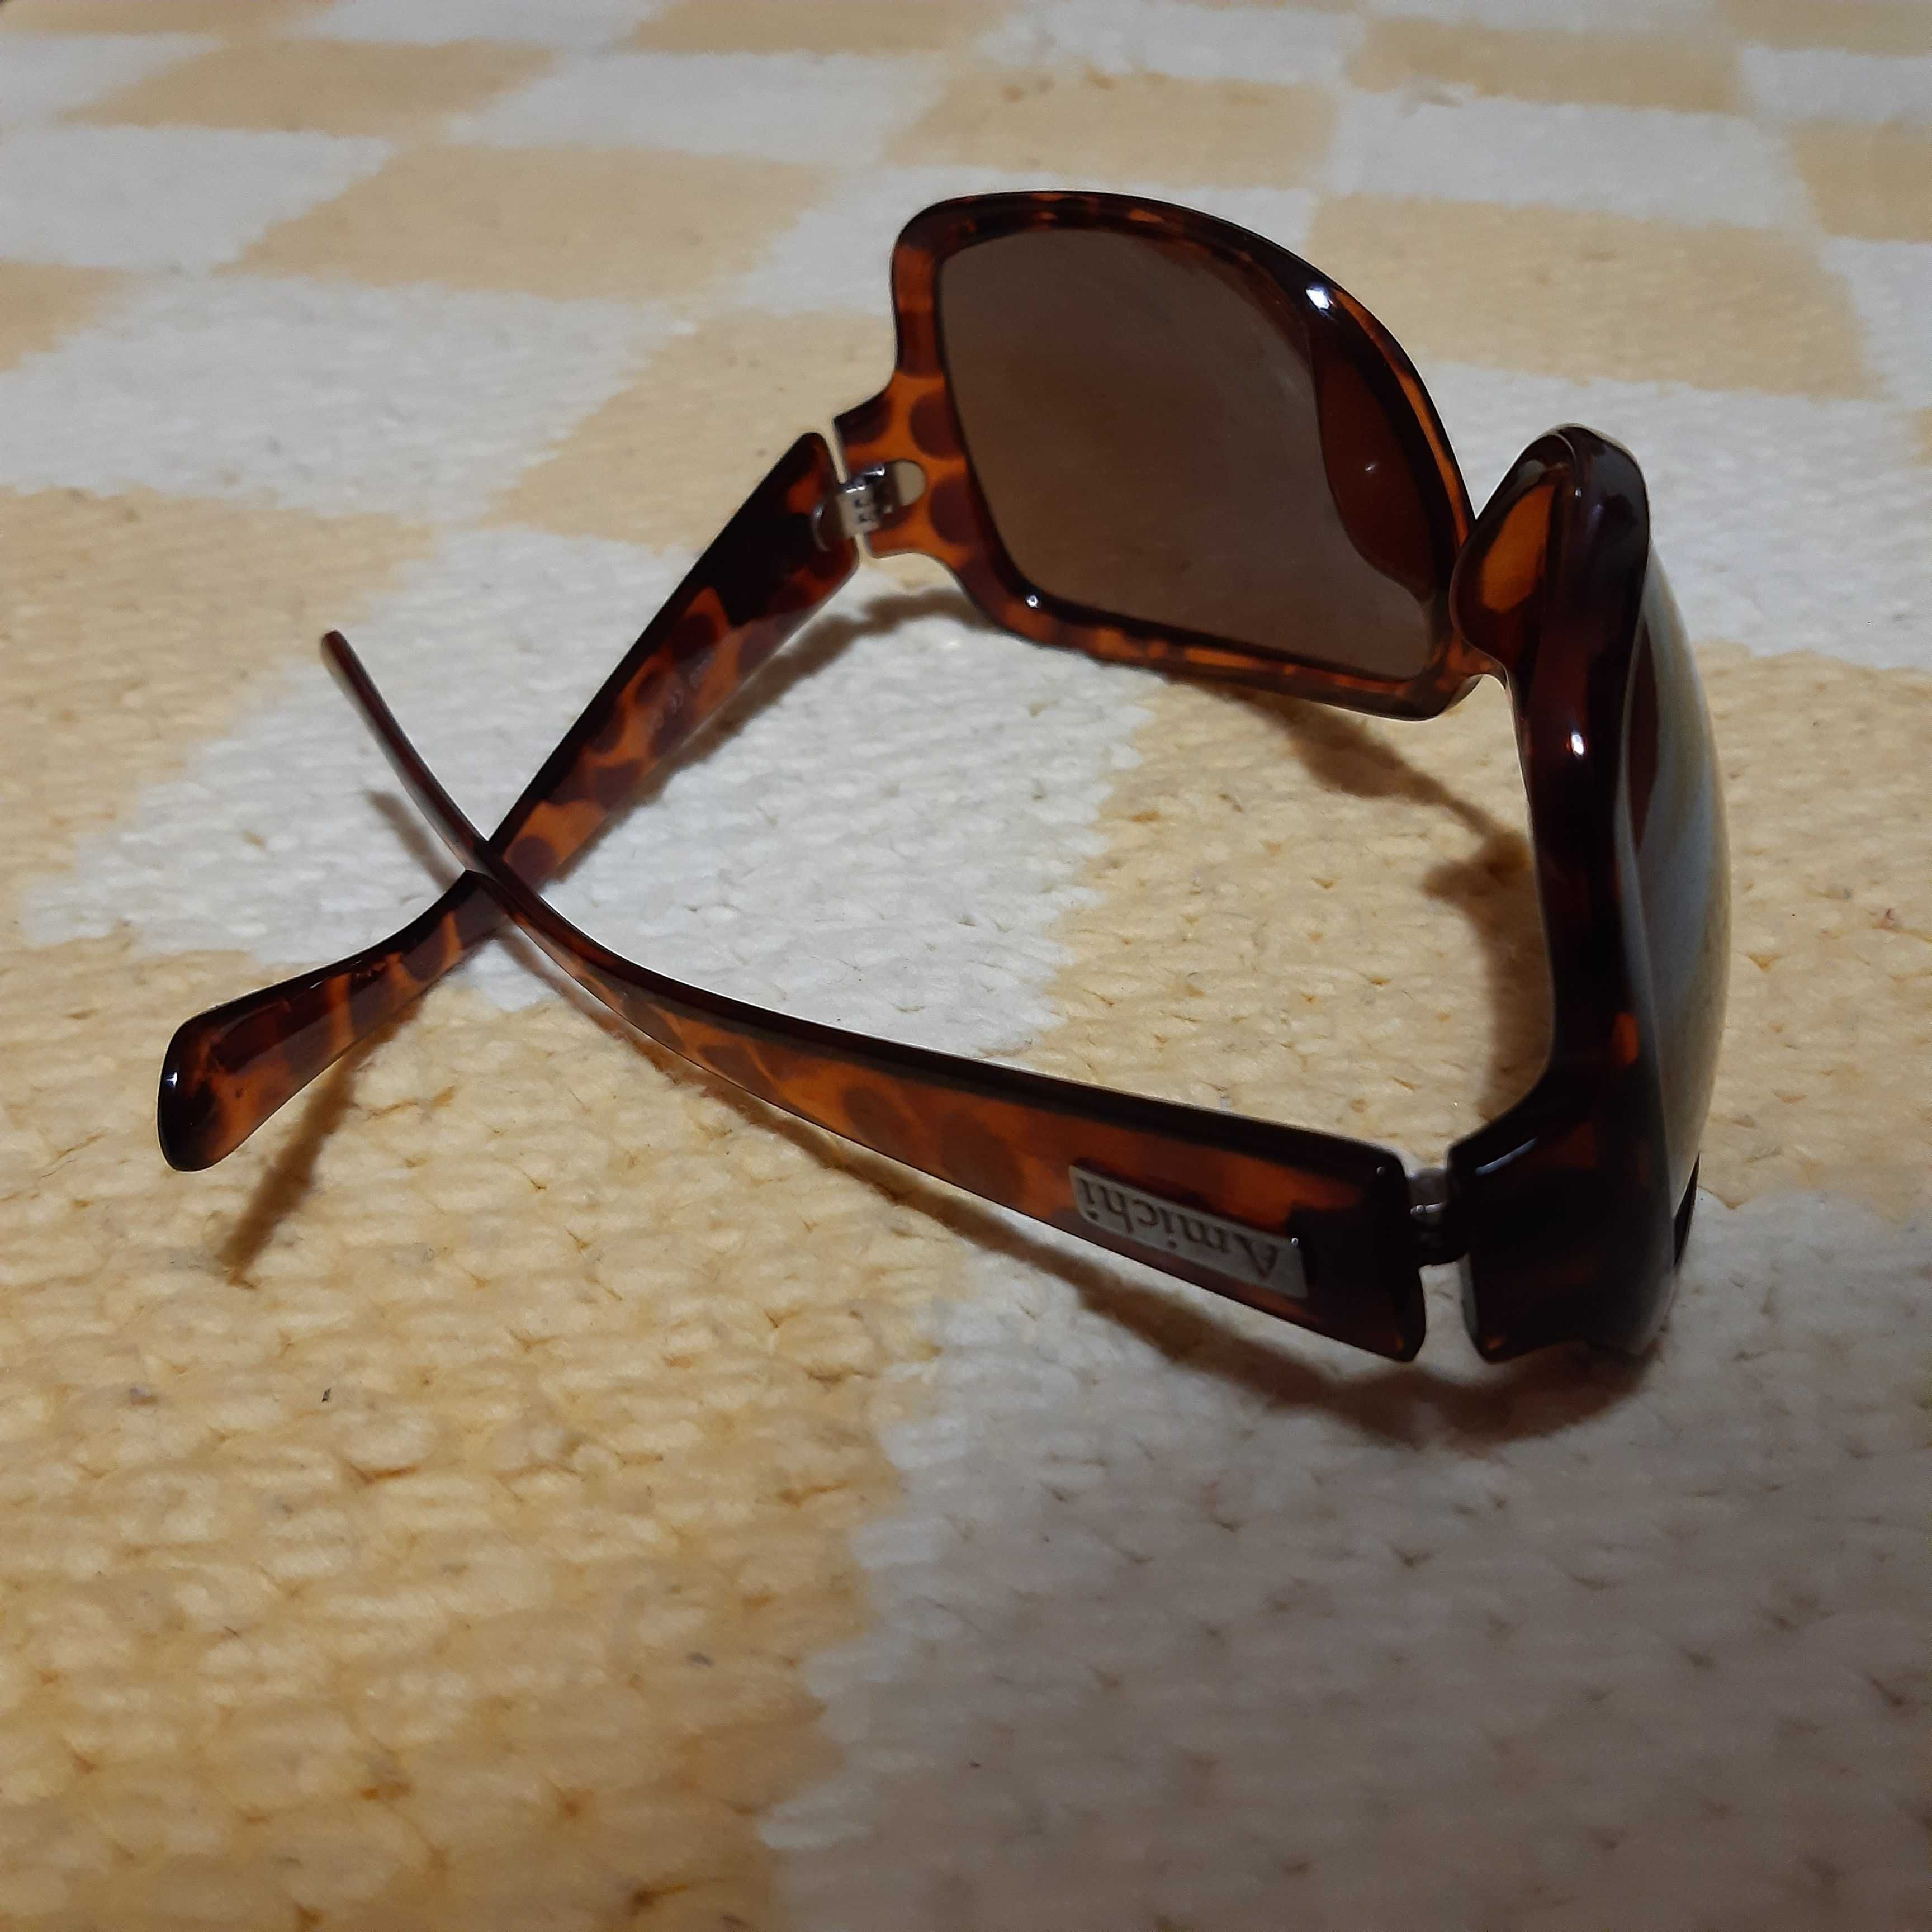 Óculos de sol de senhora italianos novos (marca Amichi)